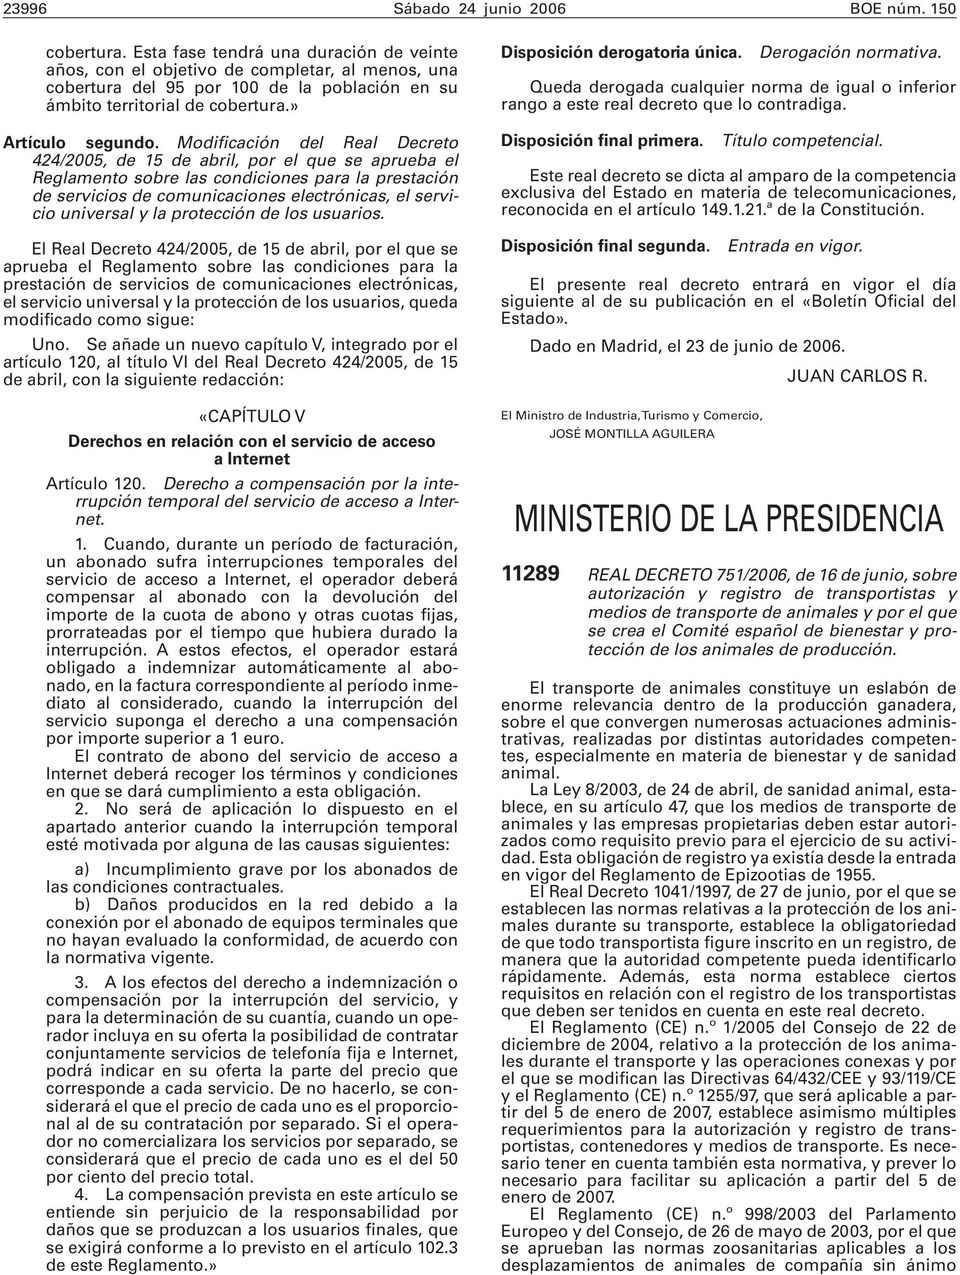 Modificación del Real Decreto 424/2005, de 15 de abril, por el que se aprueba el Reglamento sobre las condiciones para la prestación de servicios de comunicaciones electrónicas, el servicio universal